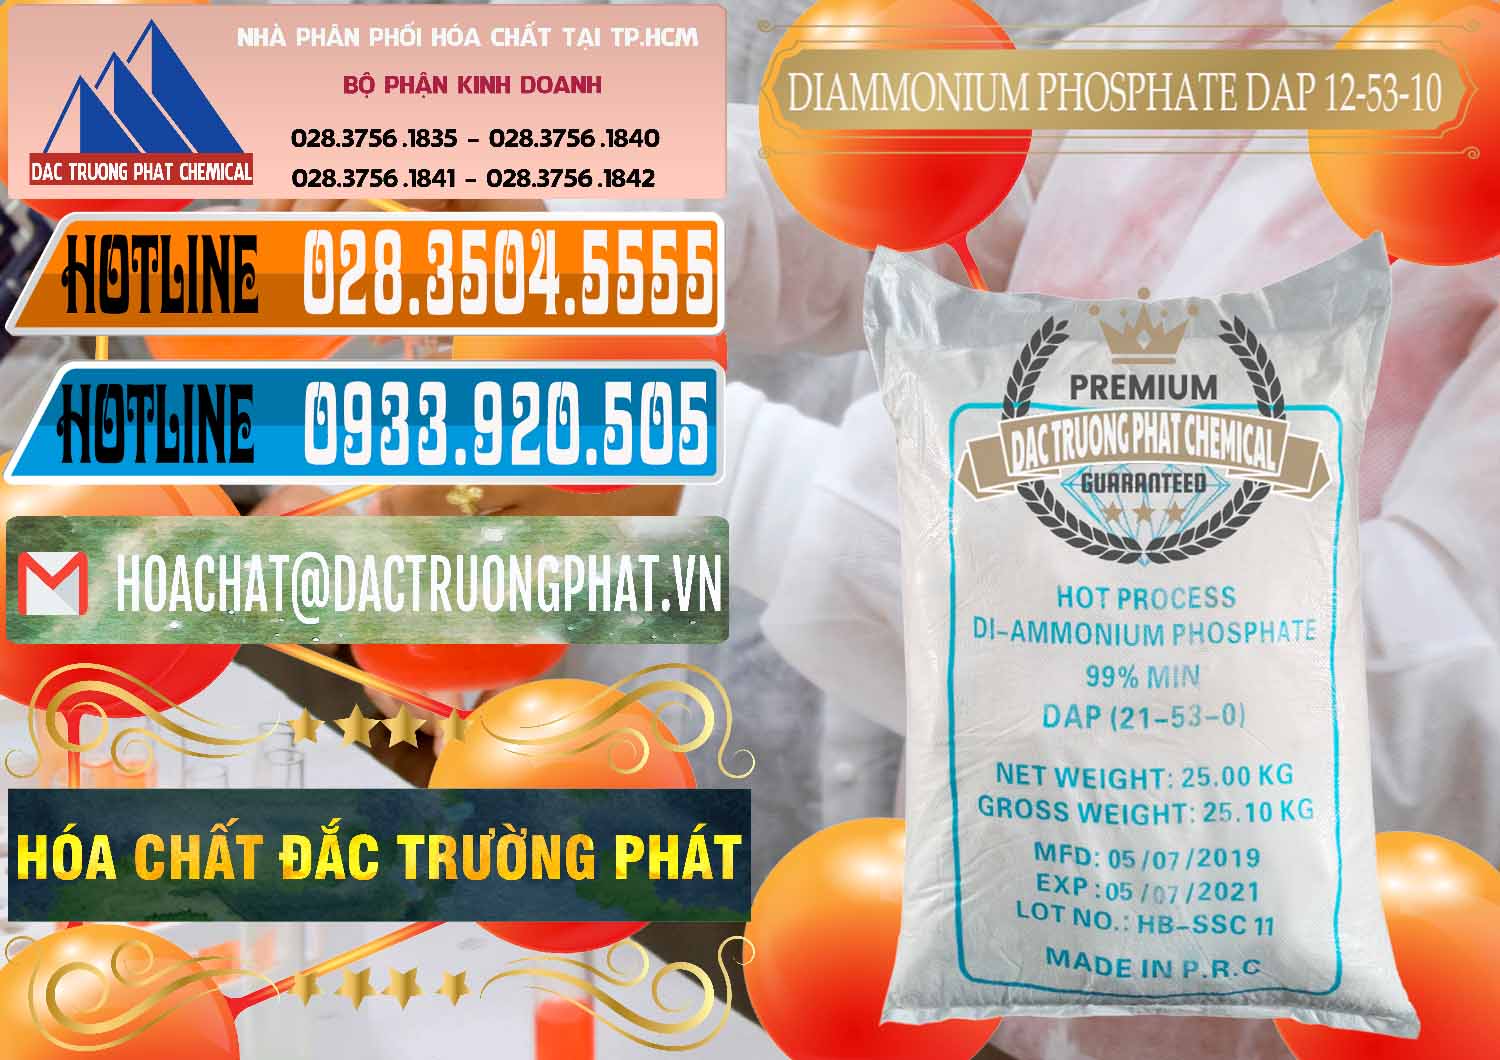 Công ty bán - cung cấp DAP - Diammonium Phosphate Trung Quốc China - 0319 - Chuyên phân phối ( cung cấp ) hóa chất tại TP.HCM - stmp.net